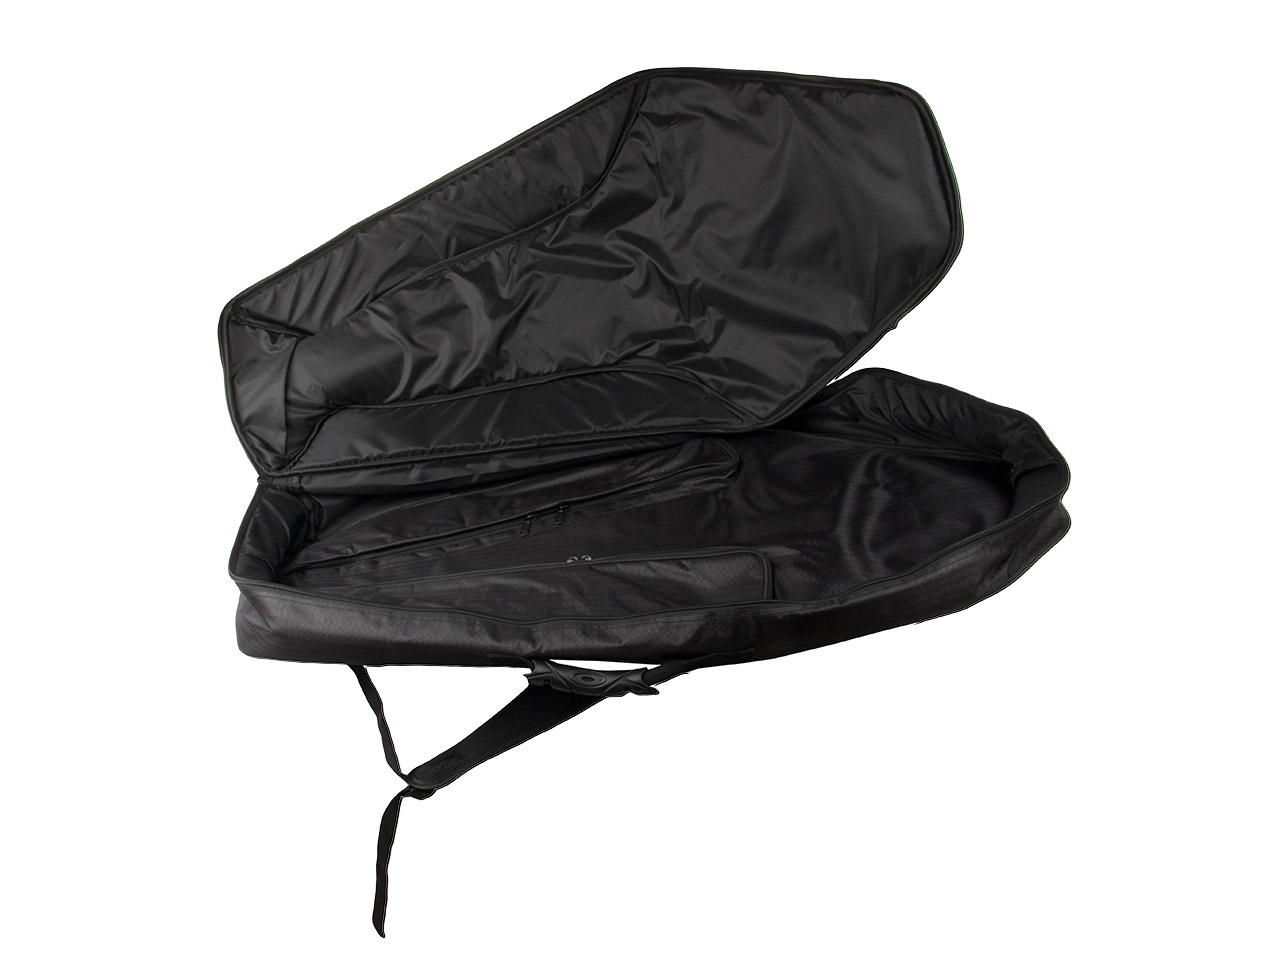 Armbrusttasche Transporttasche Rucksack Tell Sport Carbocross 97 x 50 cm schwarz 3 separate Taschen